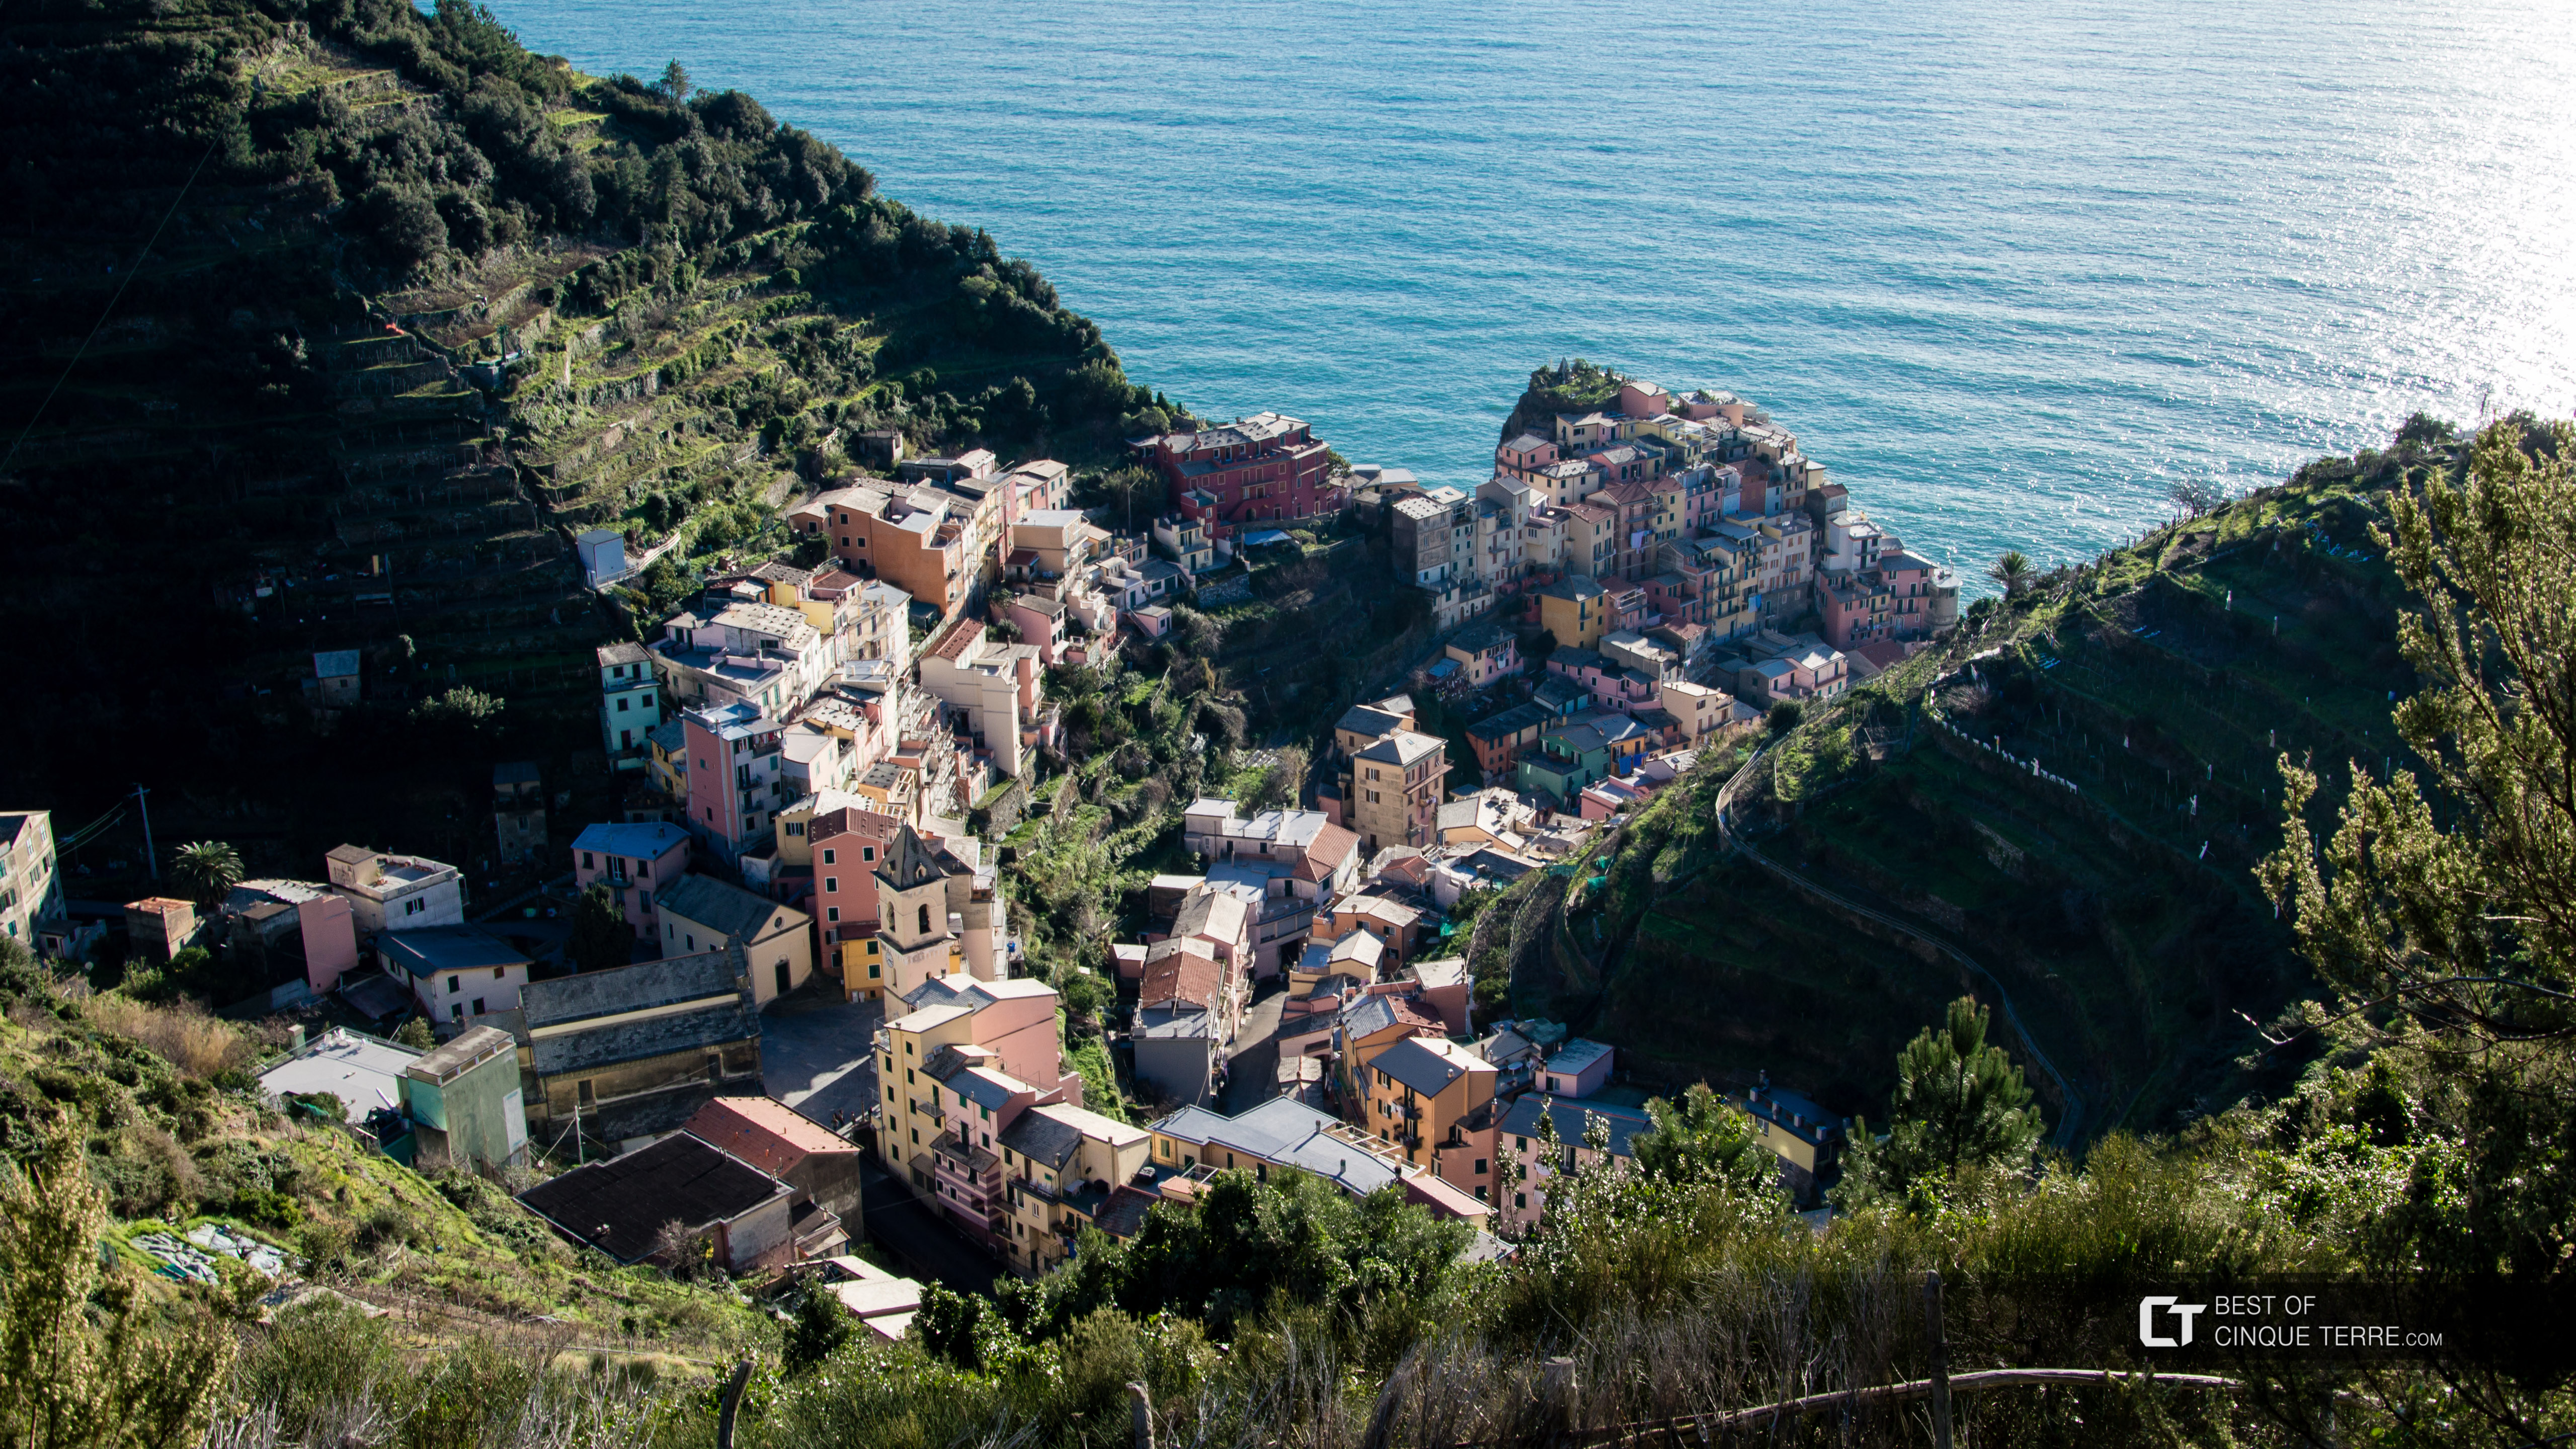 Vista del pueblo desde el camino panorámico hacia Volastra, Manarola, Cinque Terre, Italia